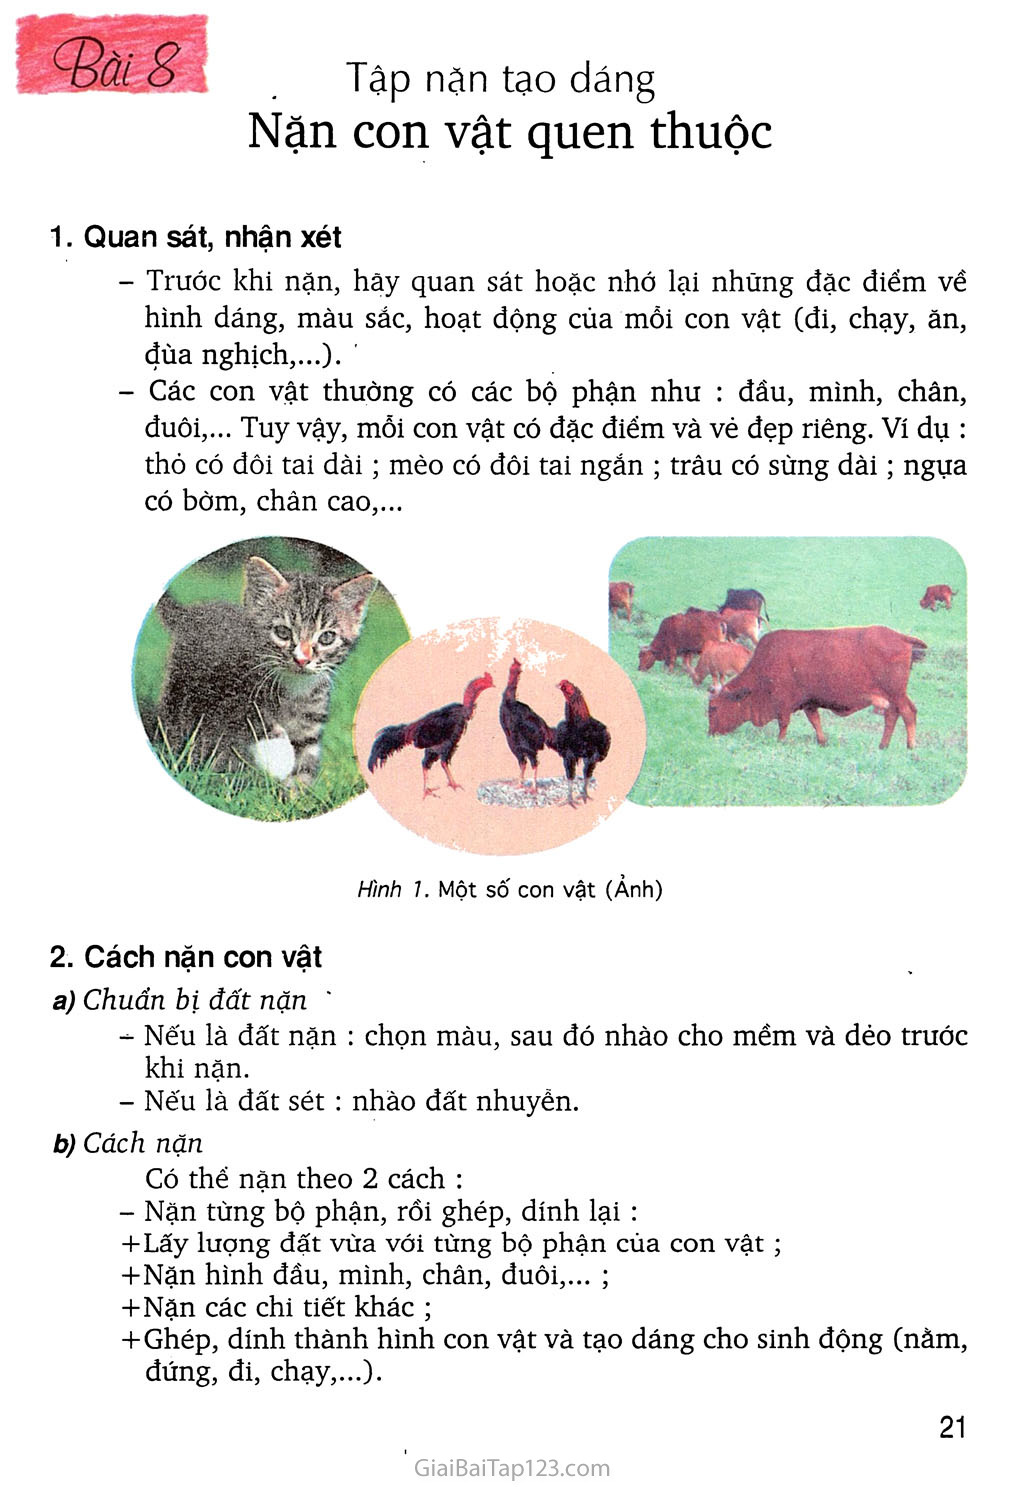 Bài 8: Tập nặn tạo dáng Nặn con vật quen thuộc trang 1